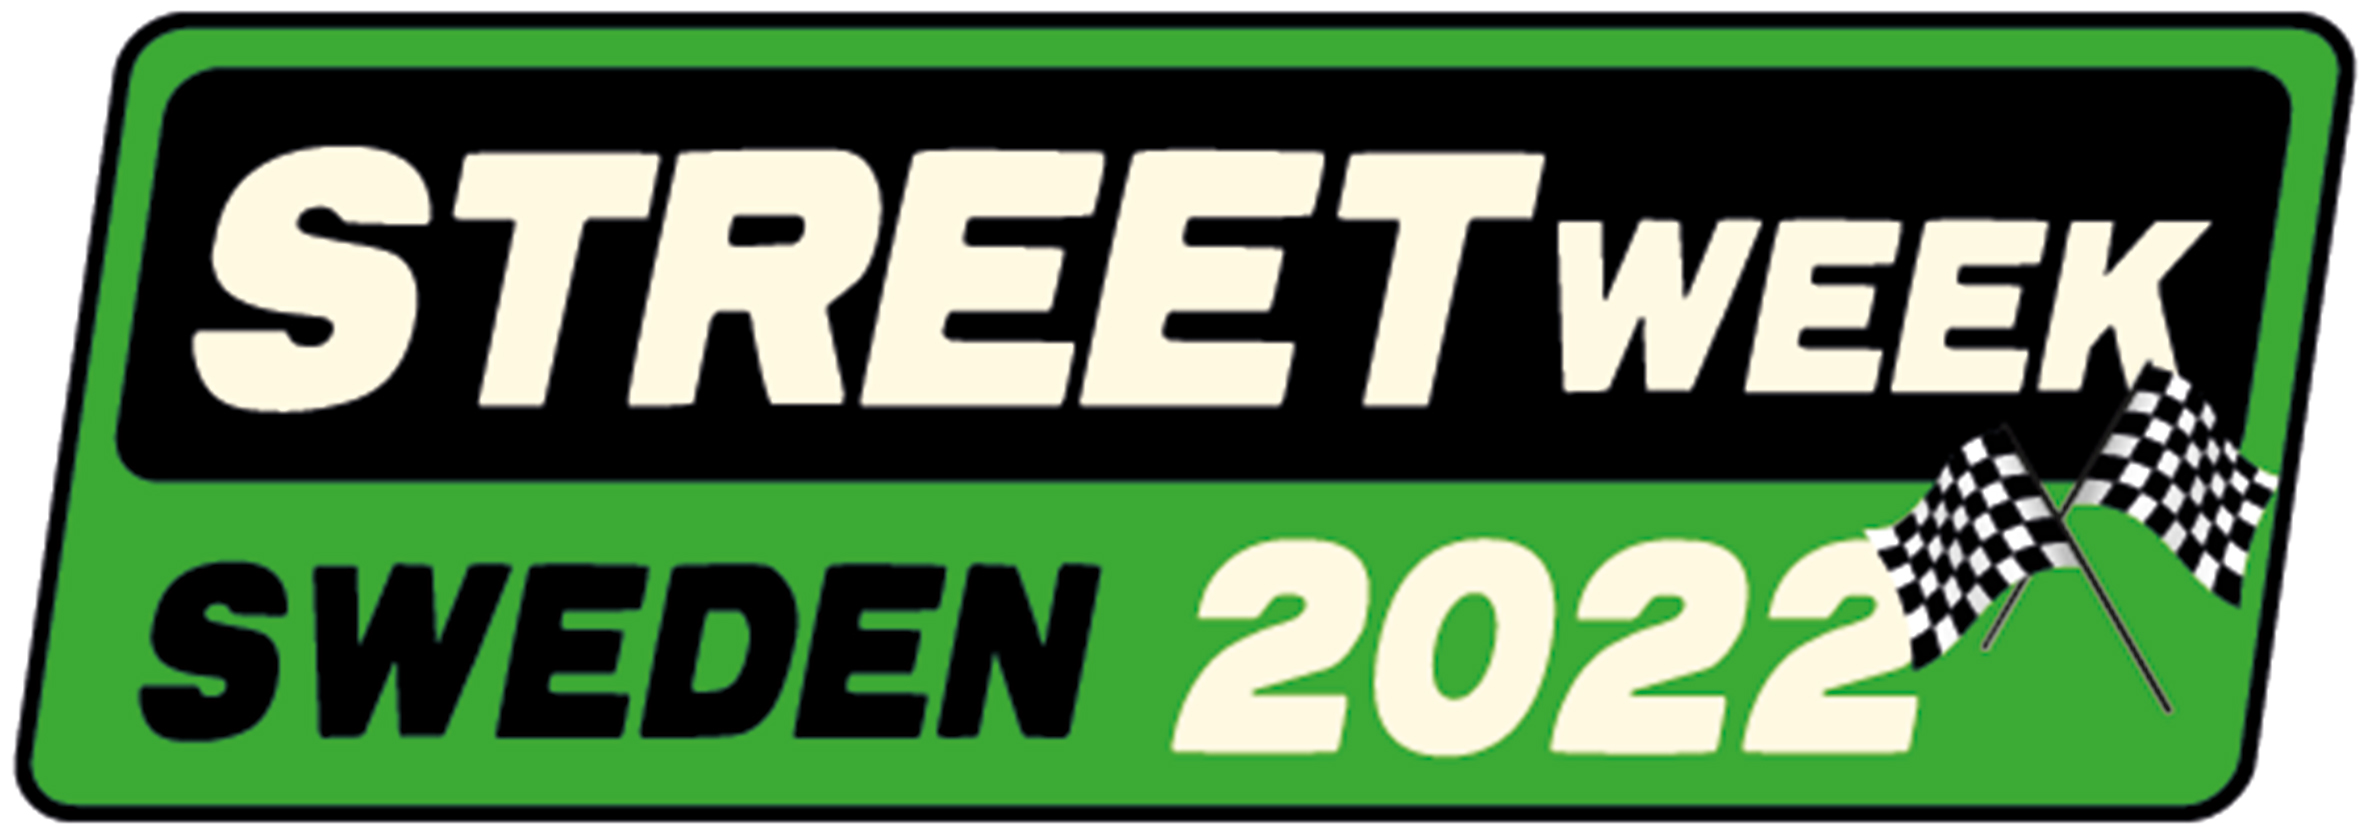 StreetWeek 2022